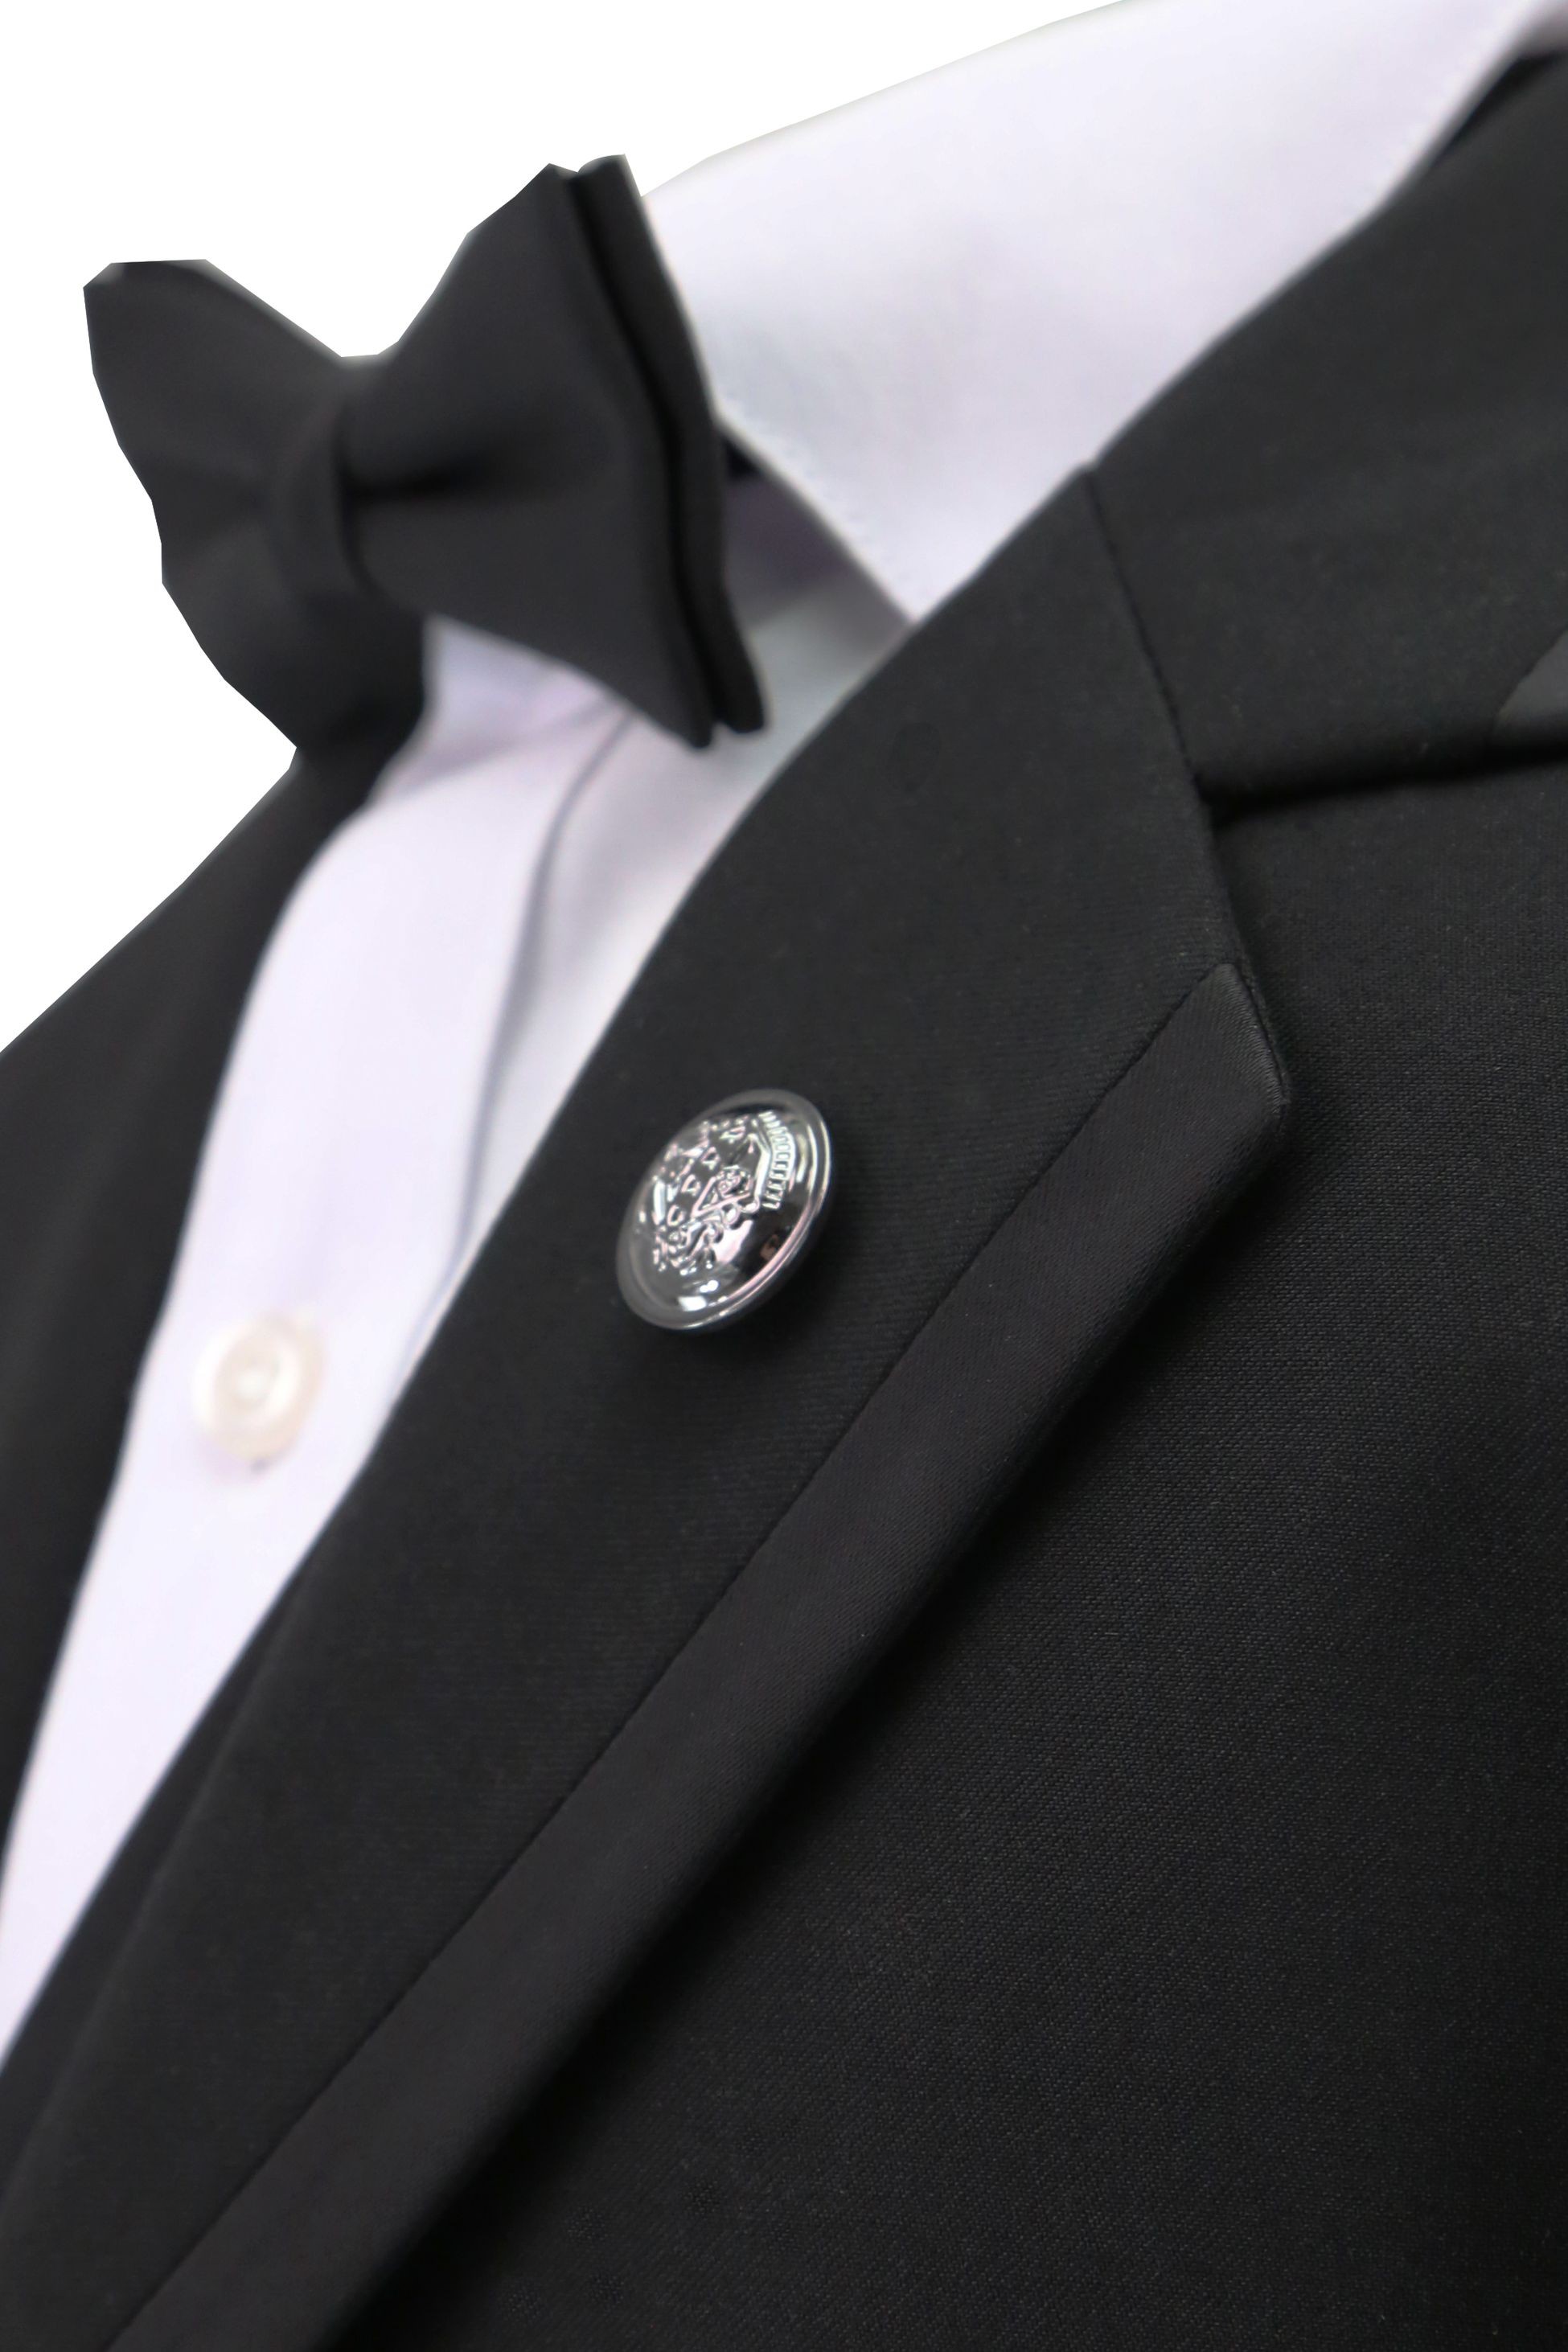 Jungen Smoking Paspel Dinner Anzug, Slim Fit 5-Teiliges Set für Hochzeiten und Besondere Anlässe - Schwarz